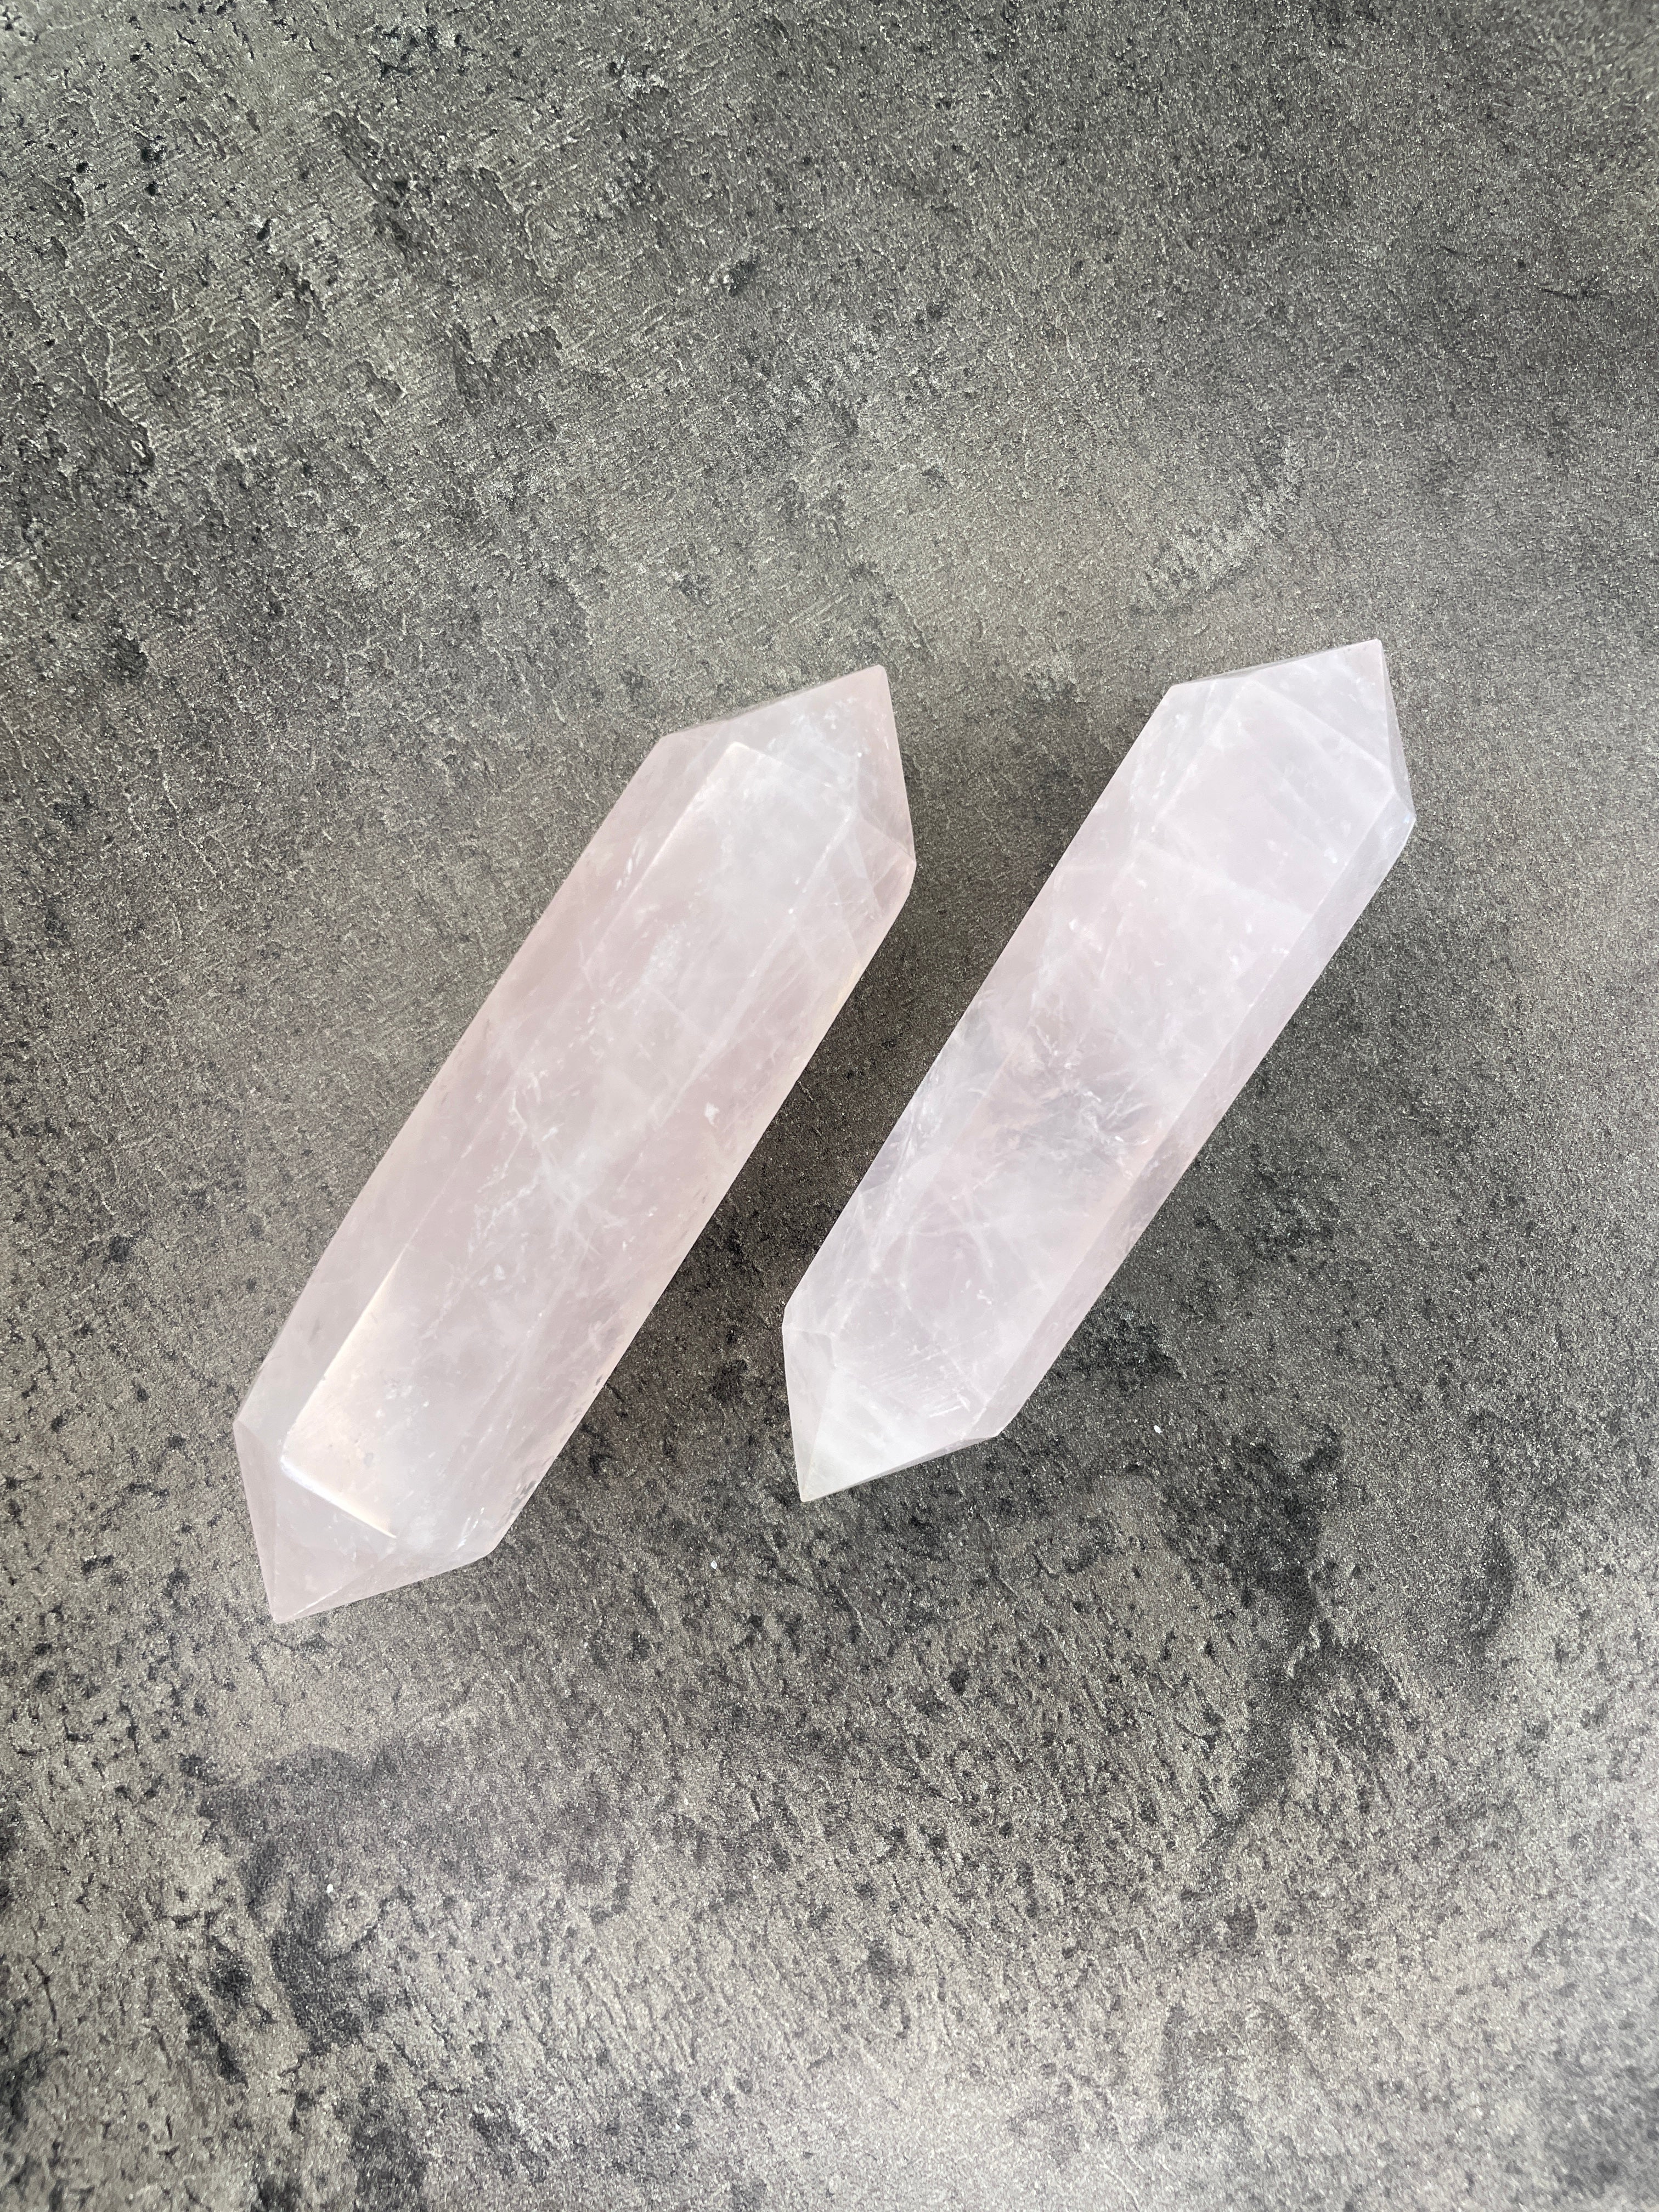 Rose quartz - Double terminated